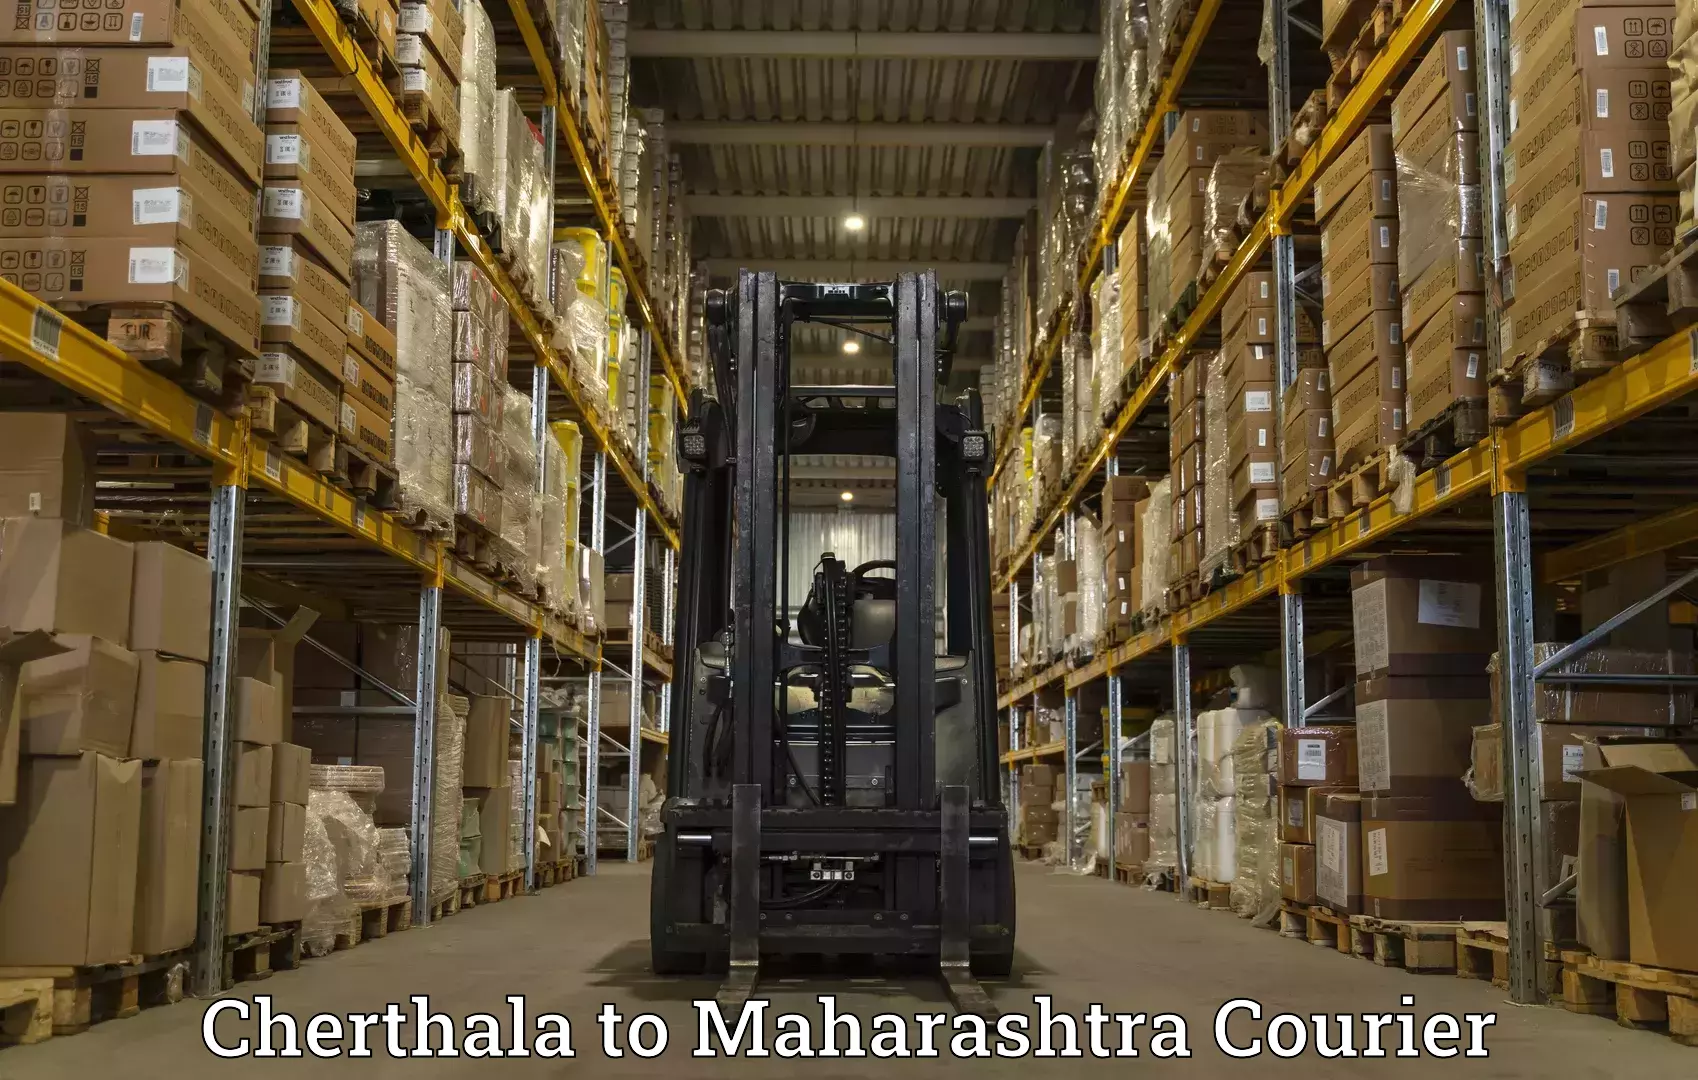 Express delivery capabilities Cherthala to Maharashtra